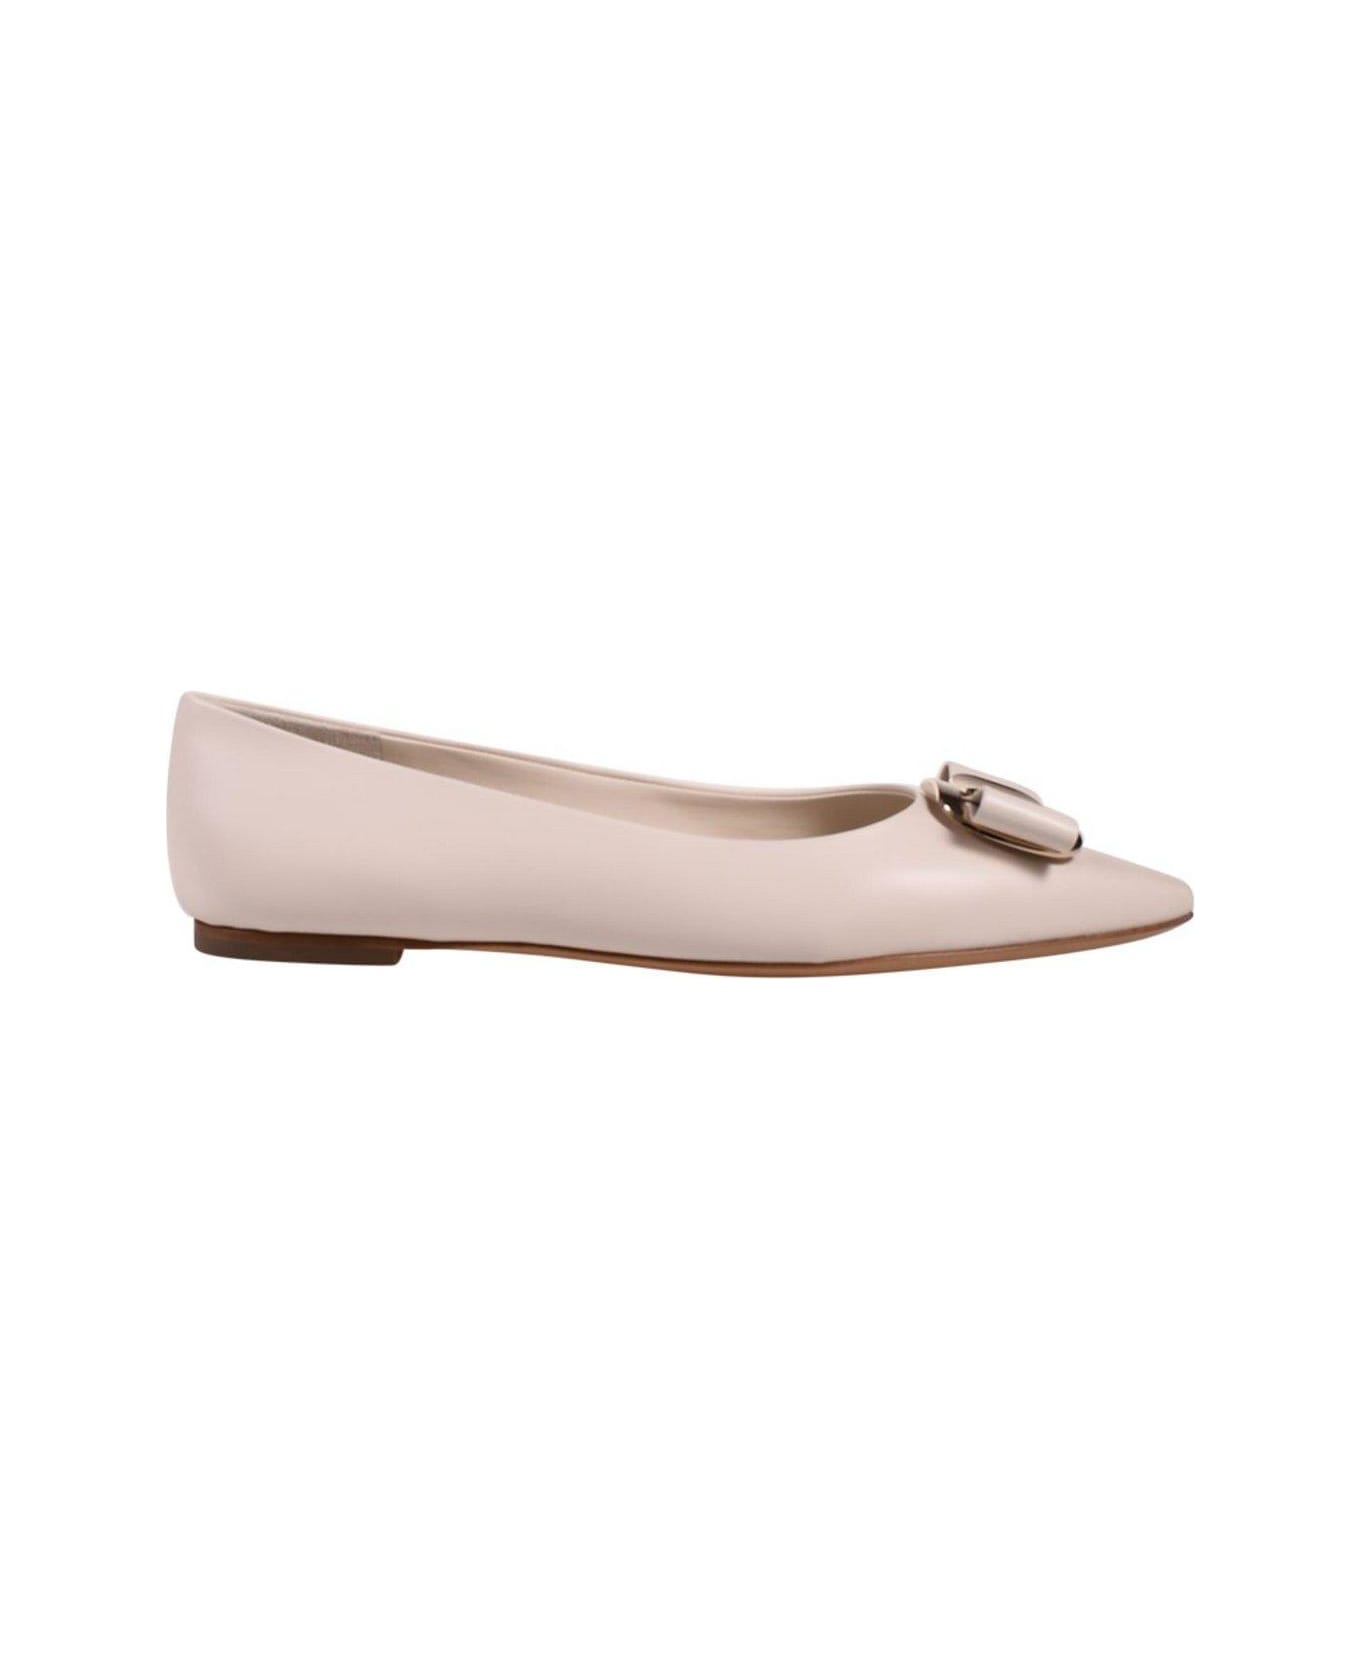 Ferragamo Bow-detailed Slip-on Ballerina Shoes - White フラットシューズ